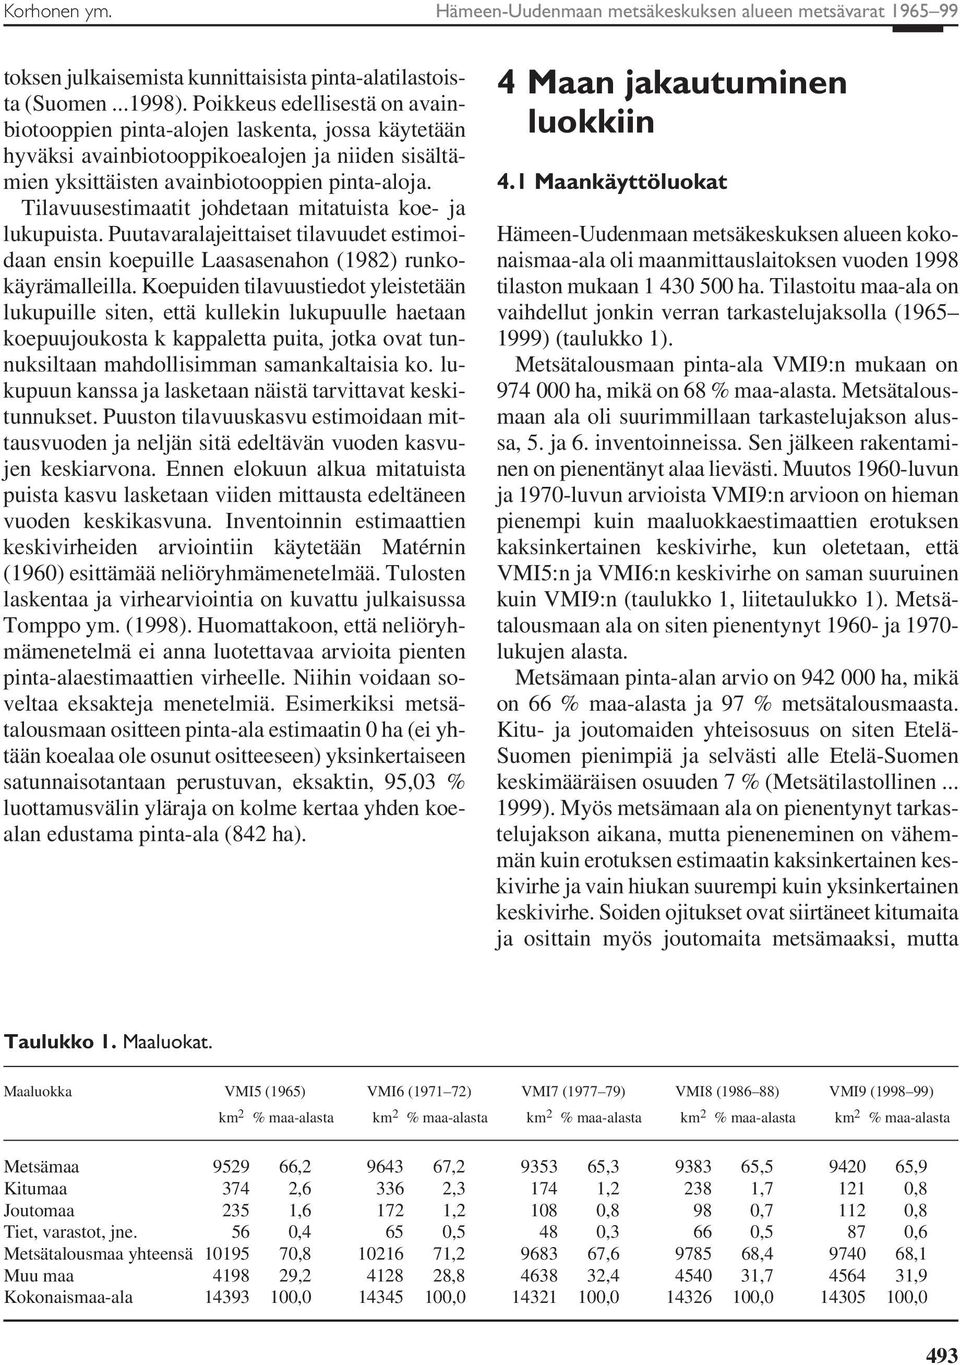 Tilavuusestimaatit johdetaan mitatuista koe- ja lukupuista. Puutavaralajeittaiset tilavuudet estimoidaan ensin koepuille Laasasenahon (1982) runkokäyrämalleilla.